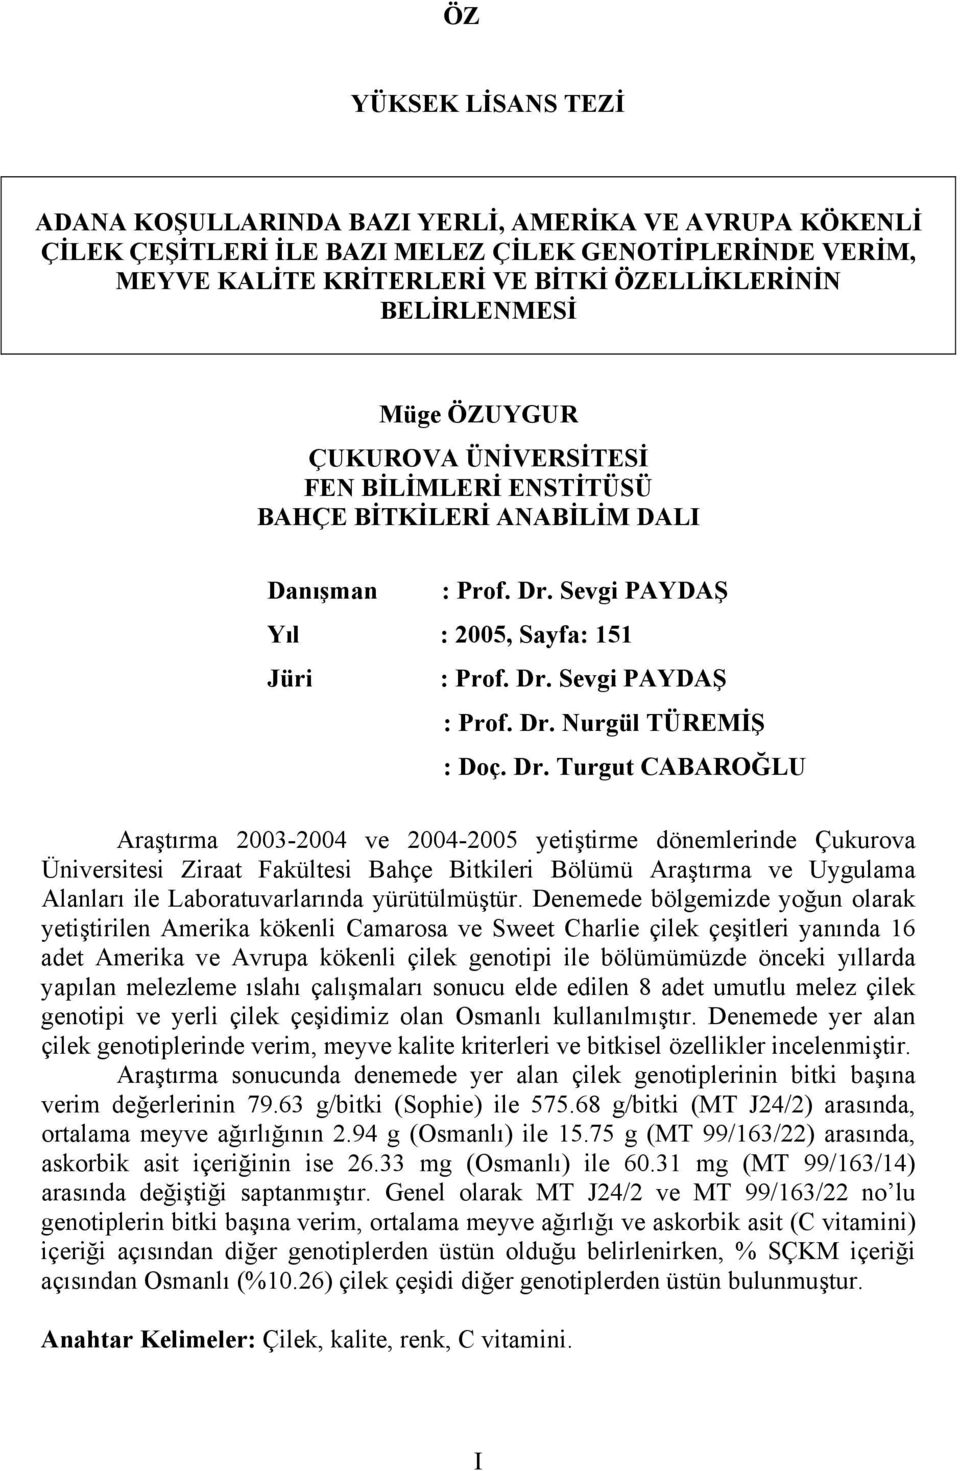 Dr. Turgut CABAROĞLU Araştırma 2003-2004 ve 2004-2005 yetiştirme dönemlerinde Çukurova Üniversitesi Ziraat Fakültesi Bahçe Bitkileri Bölümü Araştırma ve Uygulama Alanları ile Laboratuvarlarında